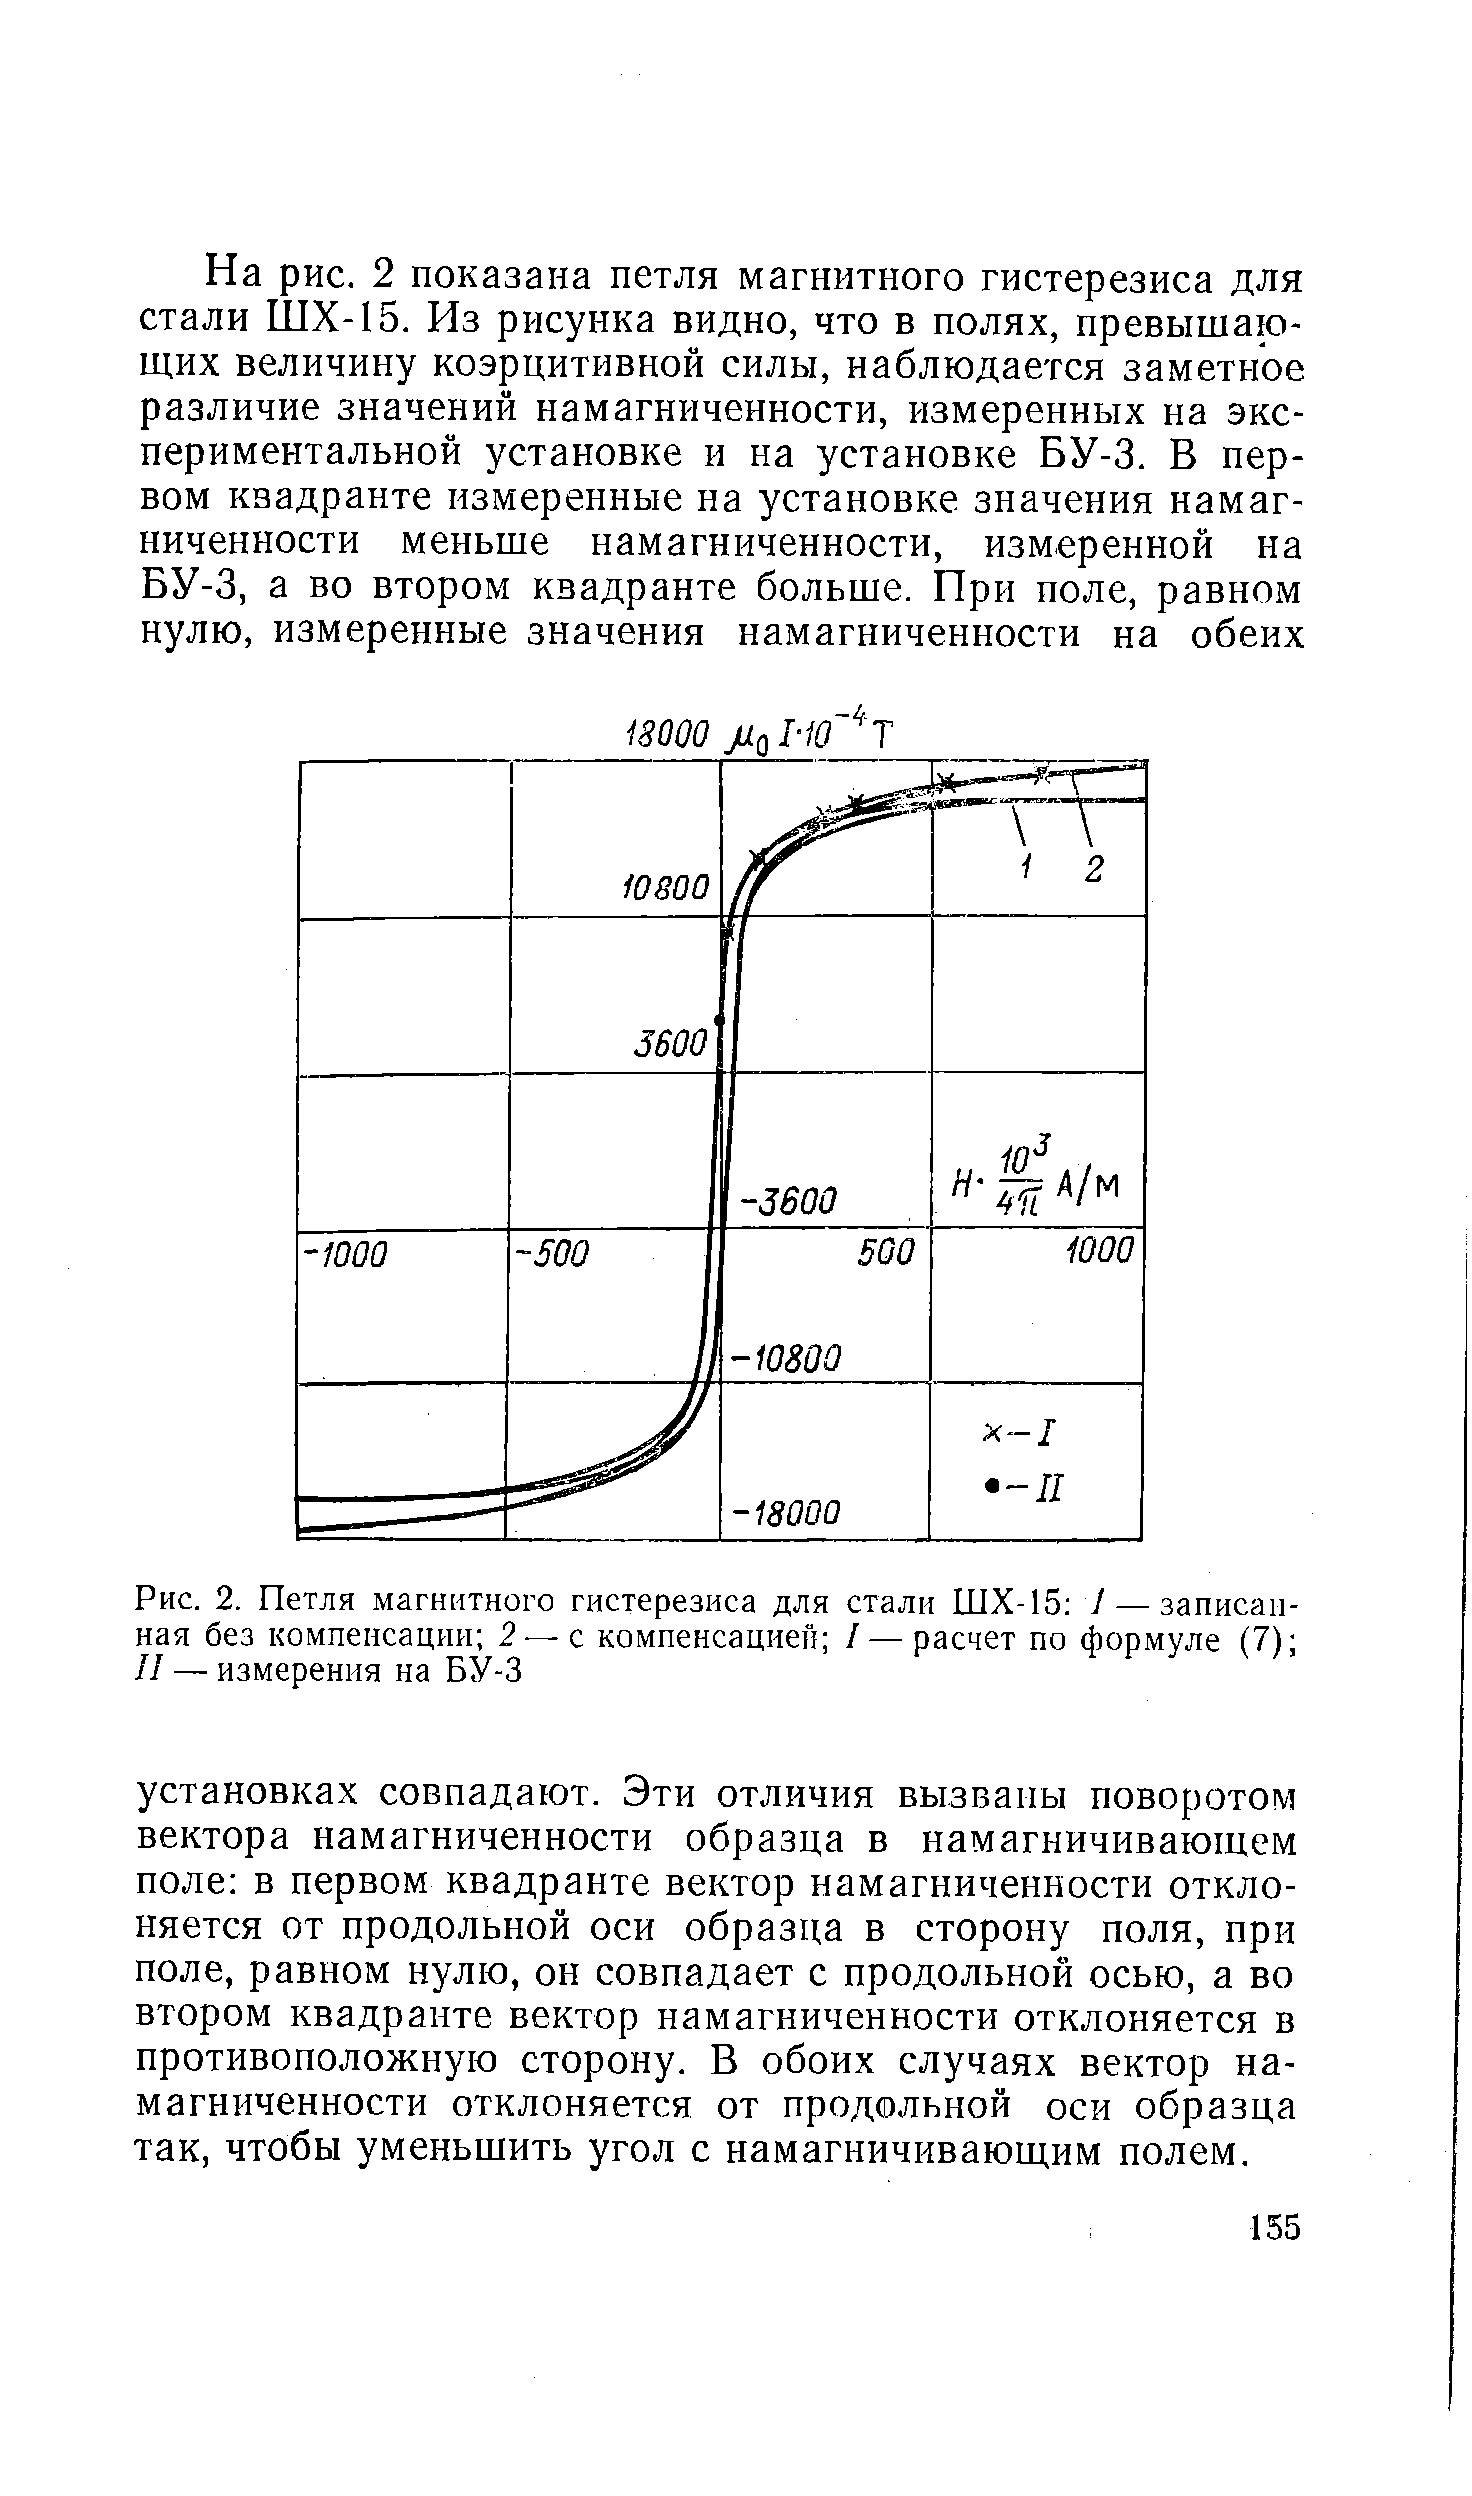 Рис. 2. Петля магнитного гистерезиса для стали ШХ-15 I — записанная без компенсации 2с компенсацией / — расчет по формуле (7) II — измерения на БУ-3
